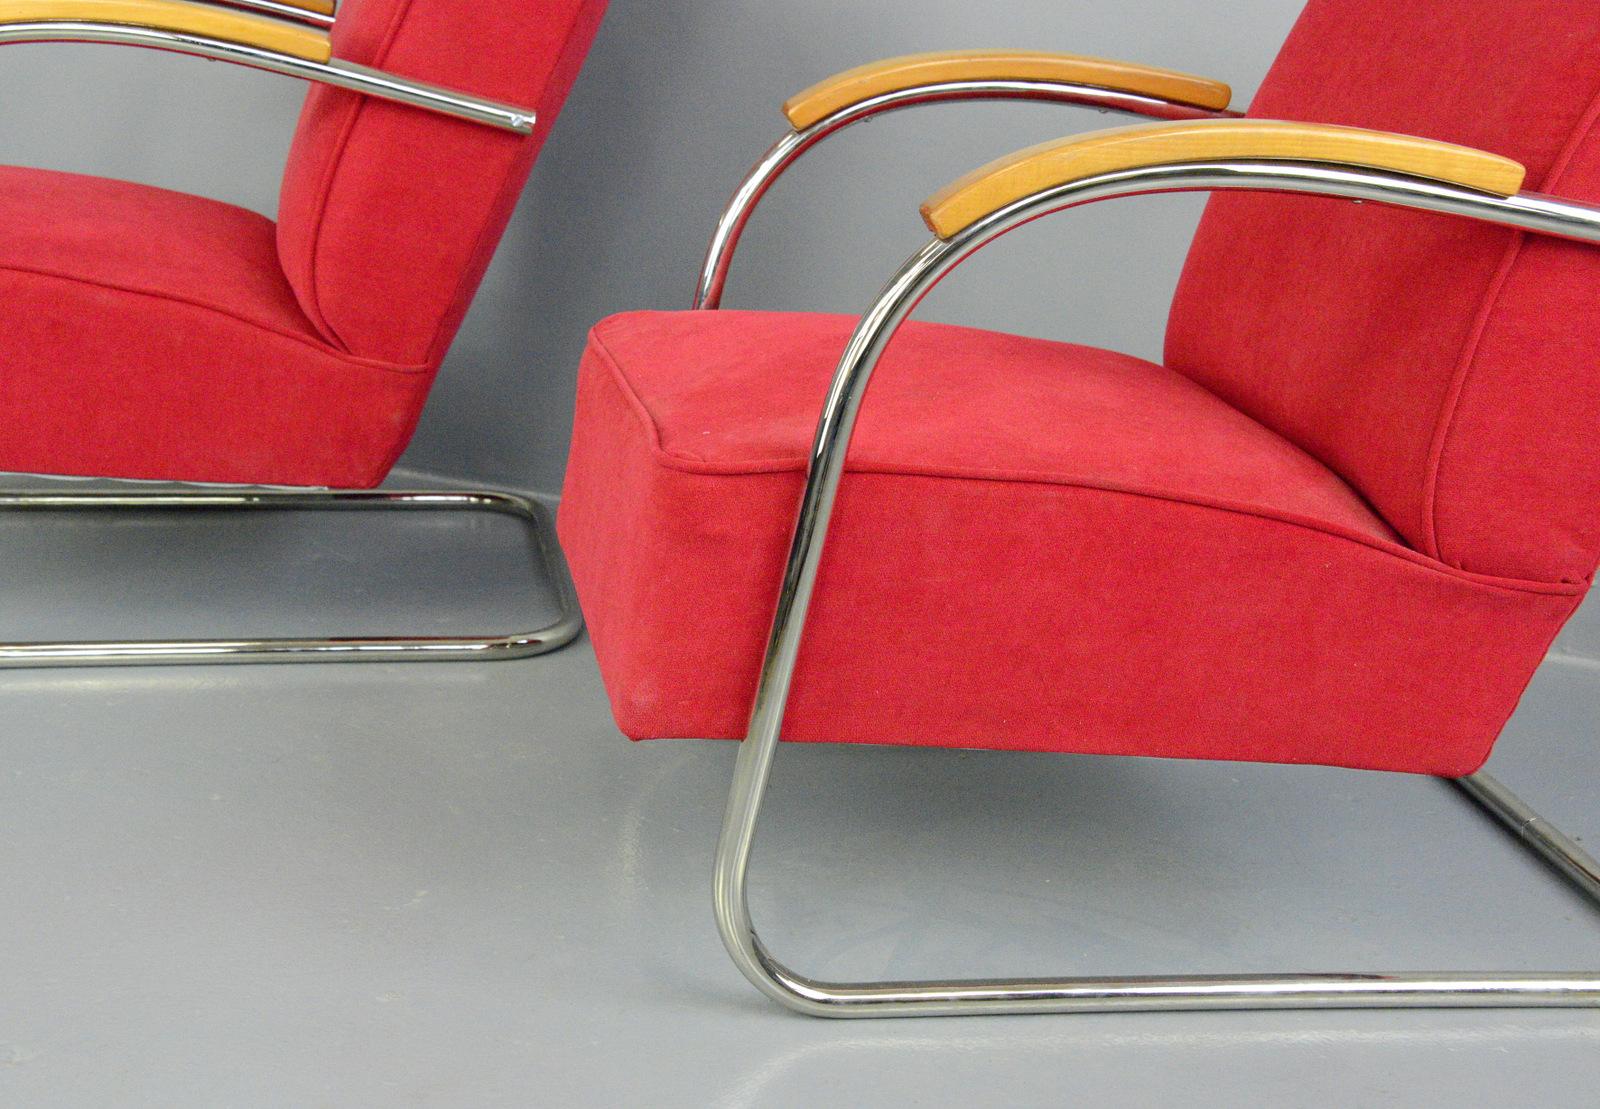 Fauteuils Bauhaus par Mucke Melder, vers les années 1930.

- Le prix est pour la paire
- Sièges et dossier à ressorts
- Cadres cantilever en tube d'acier chromé
- Nouvelle sellerie en velours rouge
- Modèle FN21
- Produit par Mucke Melder
-